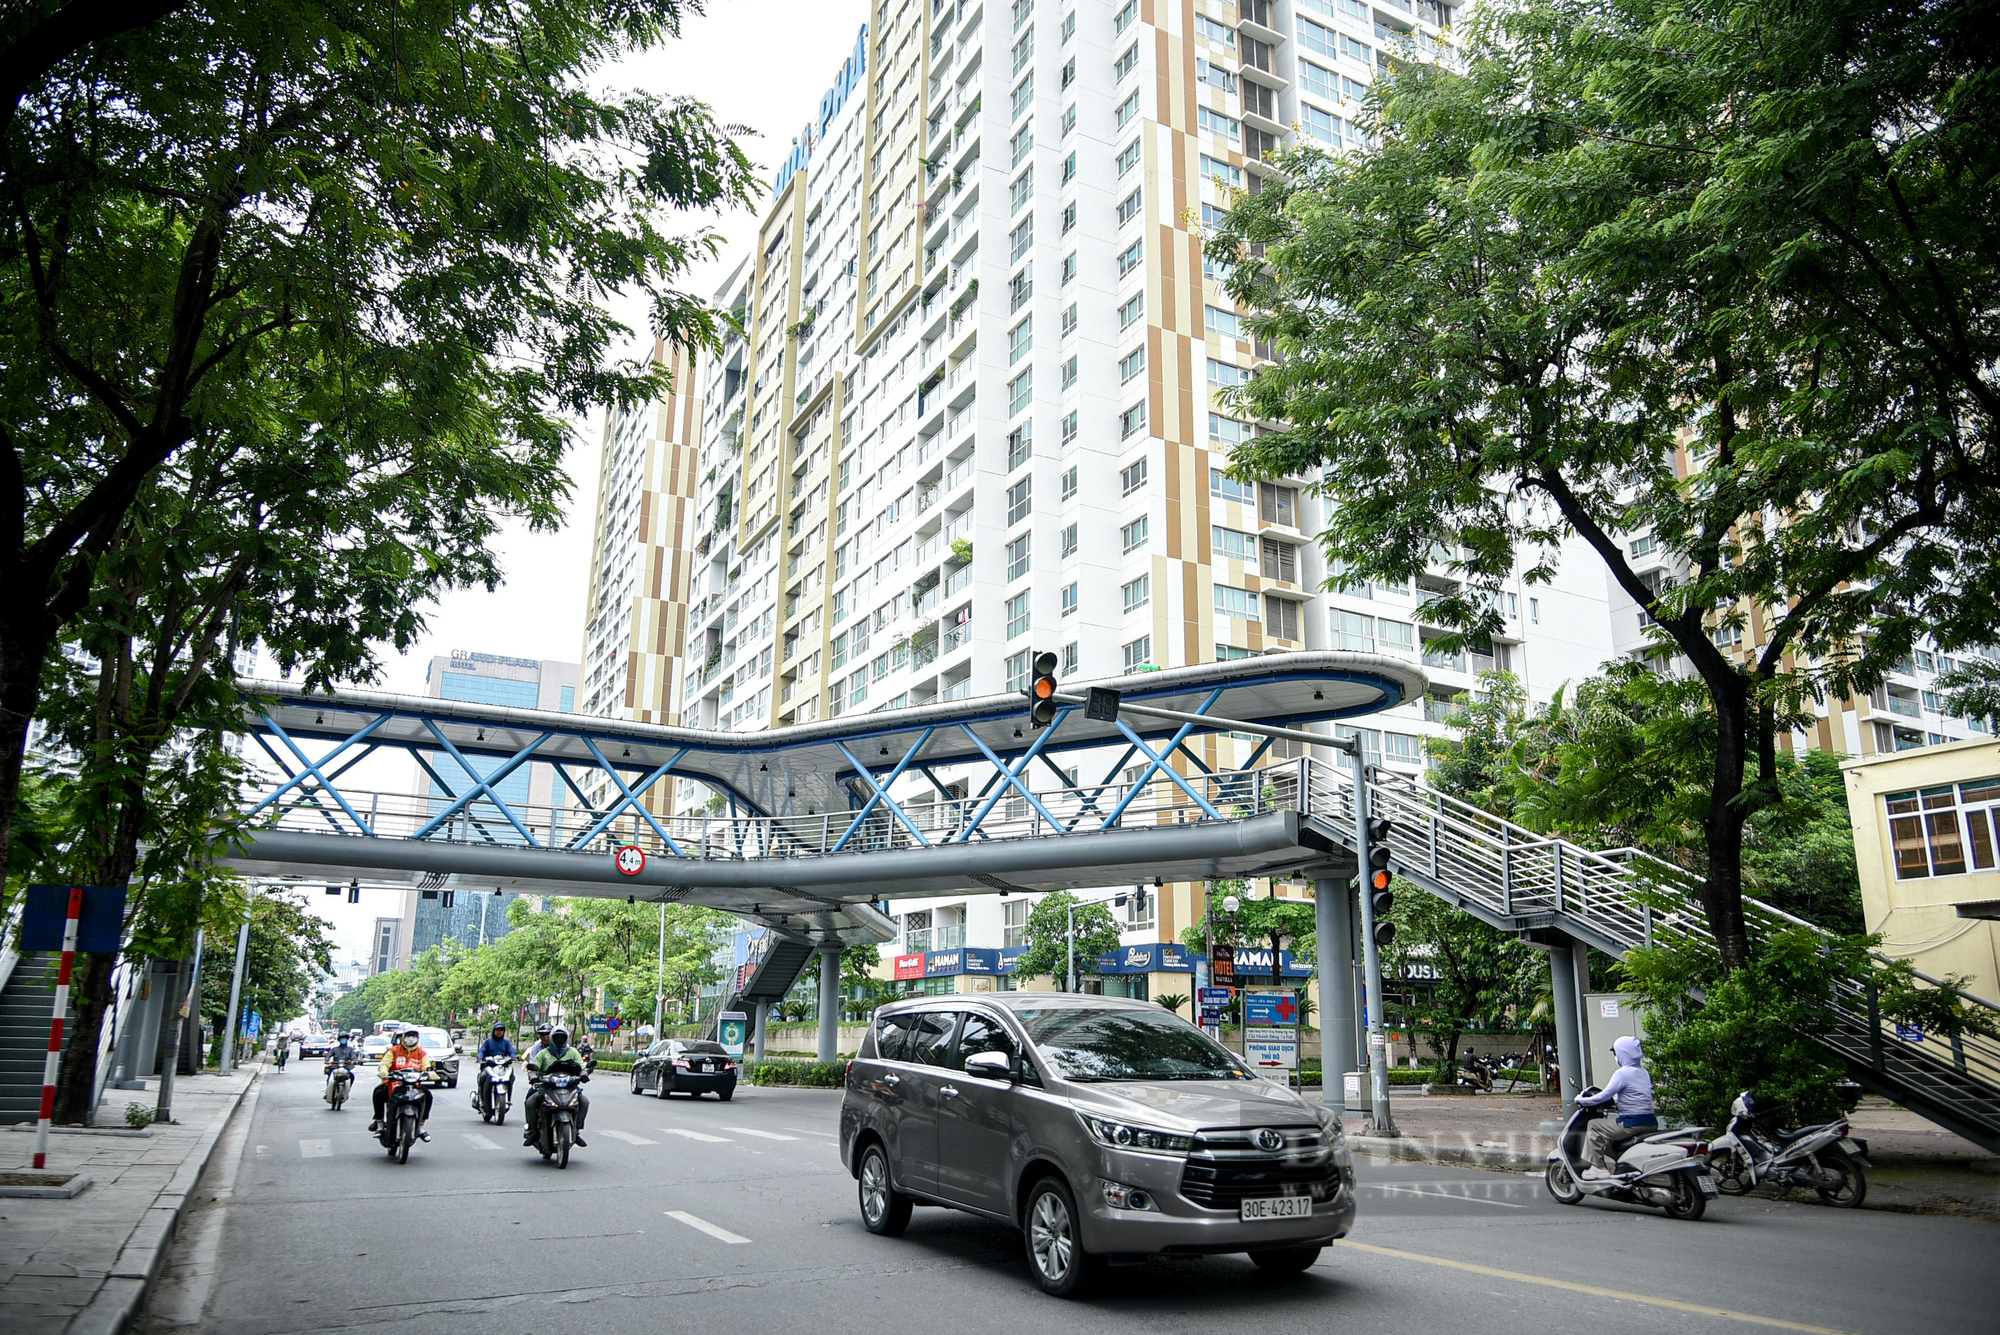 Tình trạng cầu vượt bộ hành ở Hà Nội: Nơi khang trang, chổ nhếch nhác mất mỹ quan đô thị - Ảnh 8.